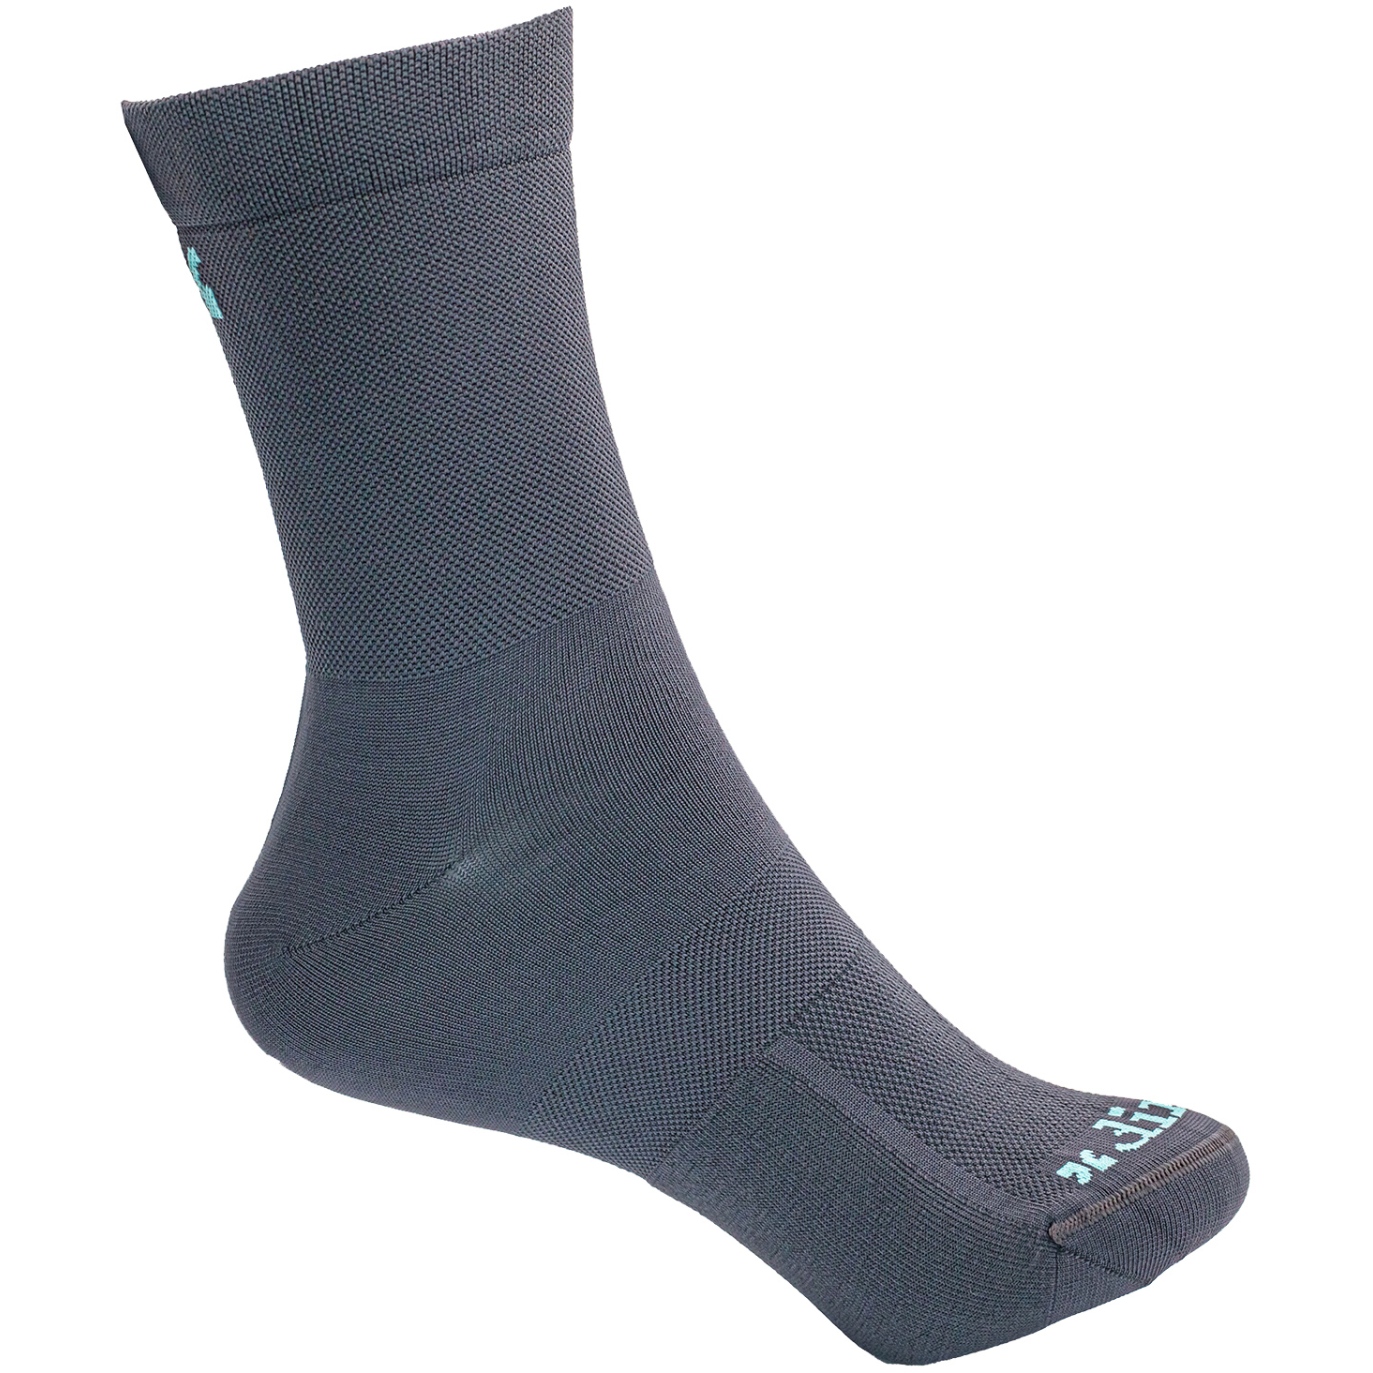 Productfoto van Dirtlej Tech20 Socks - grey